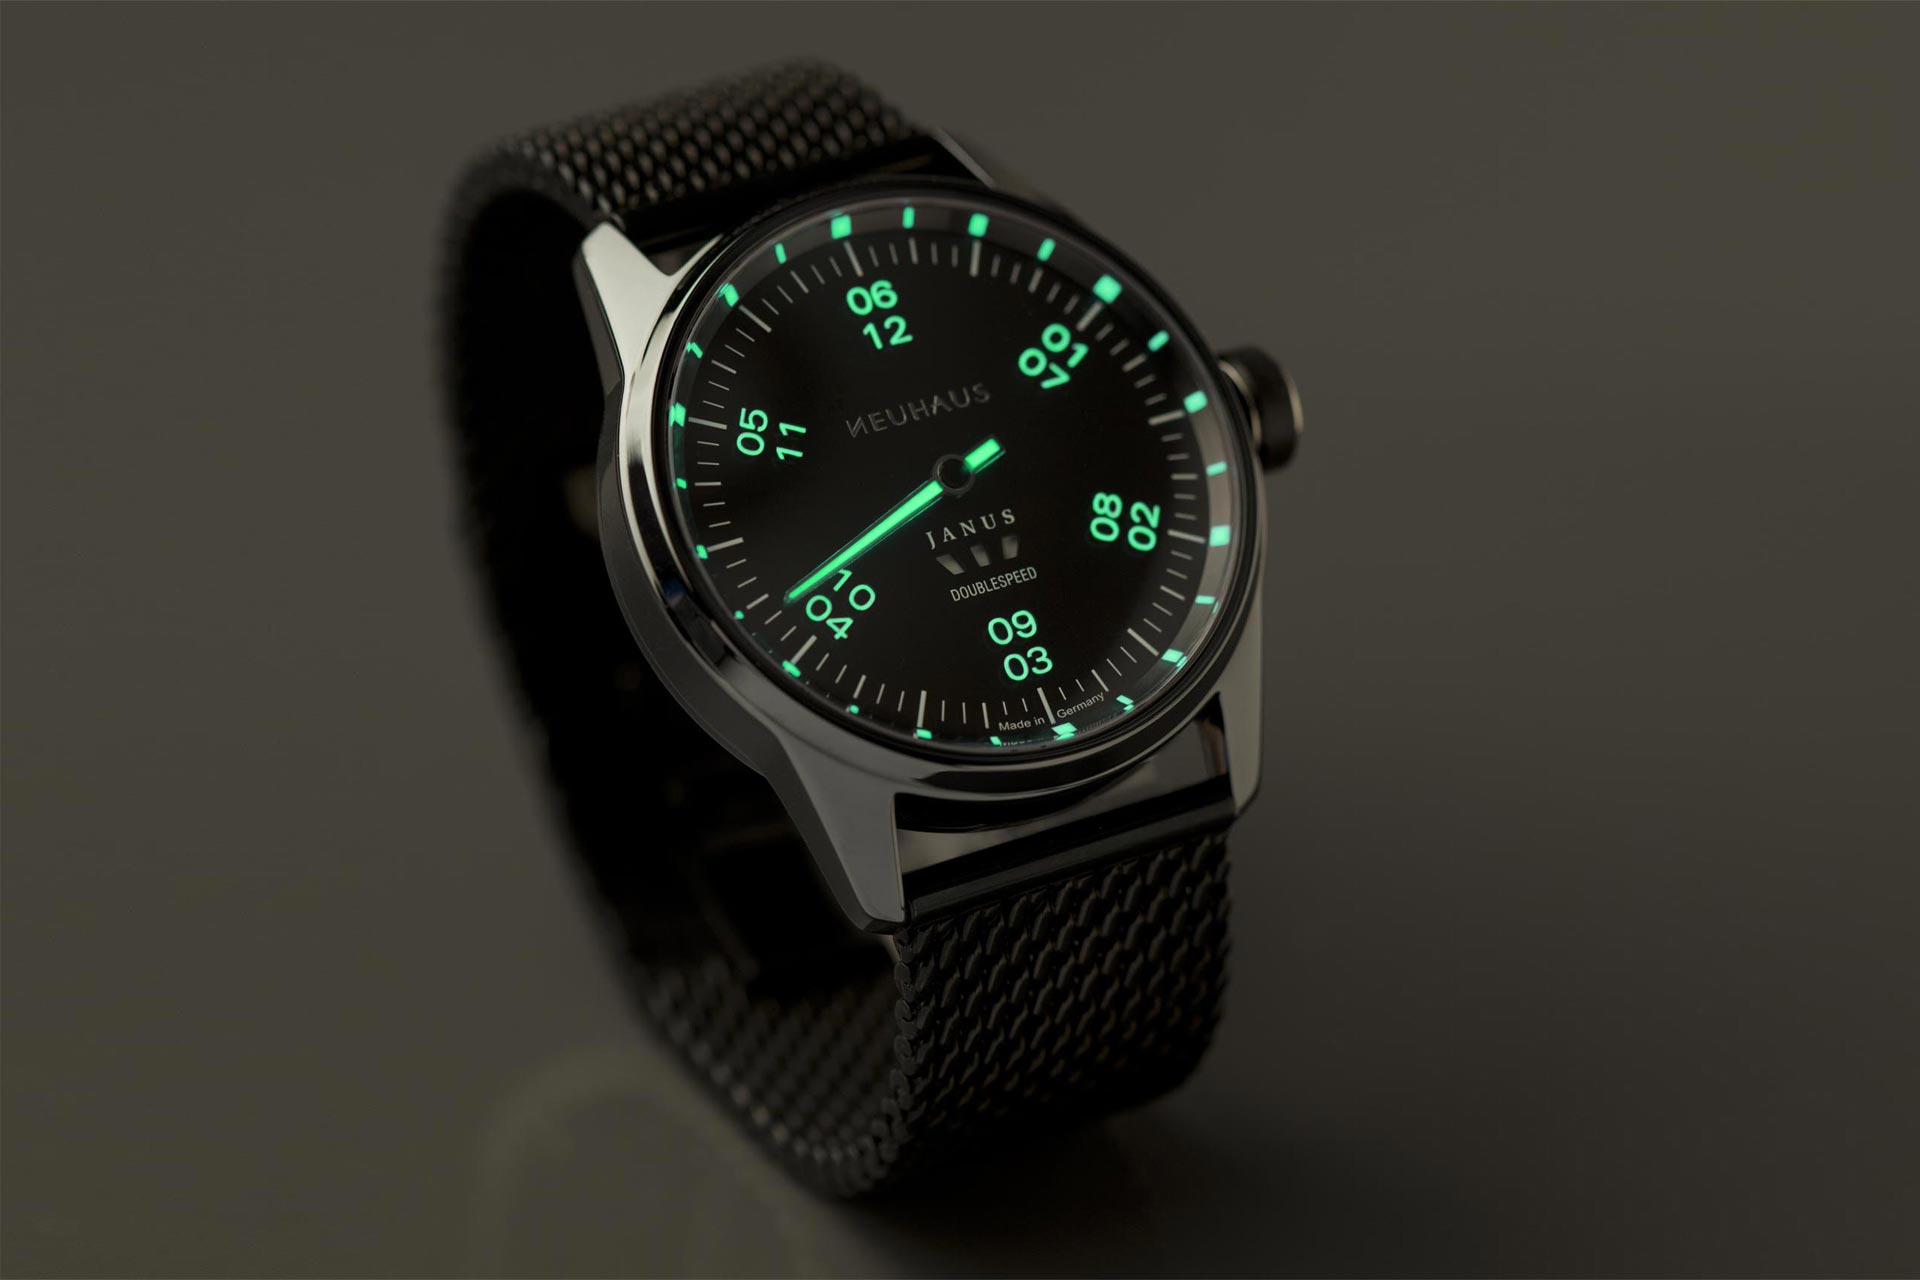 Einzeigeruhr von NEUHAUS Timepieces, Modell JANUS DoubleSpeed-Sport, Nachtsicht